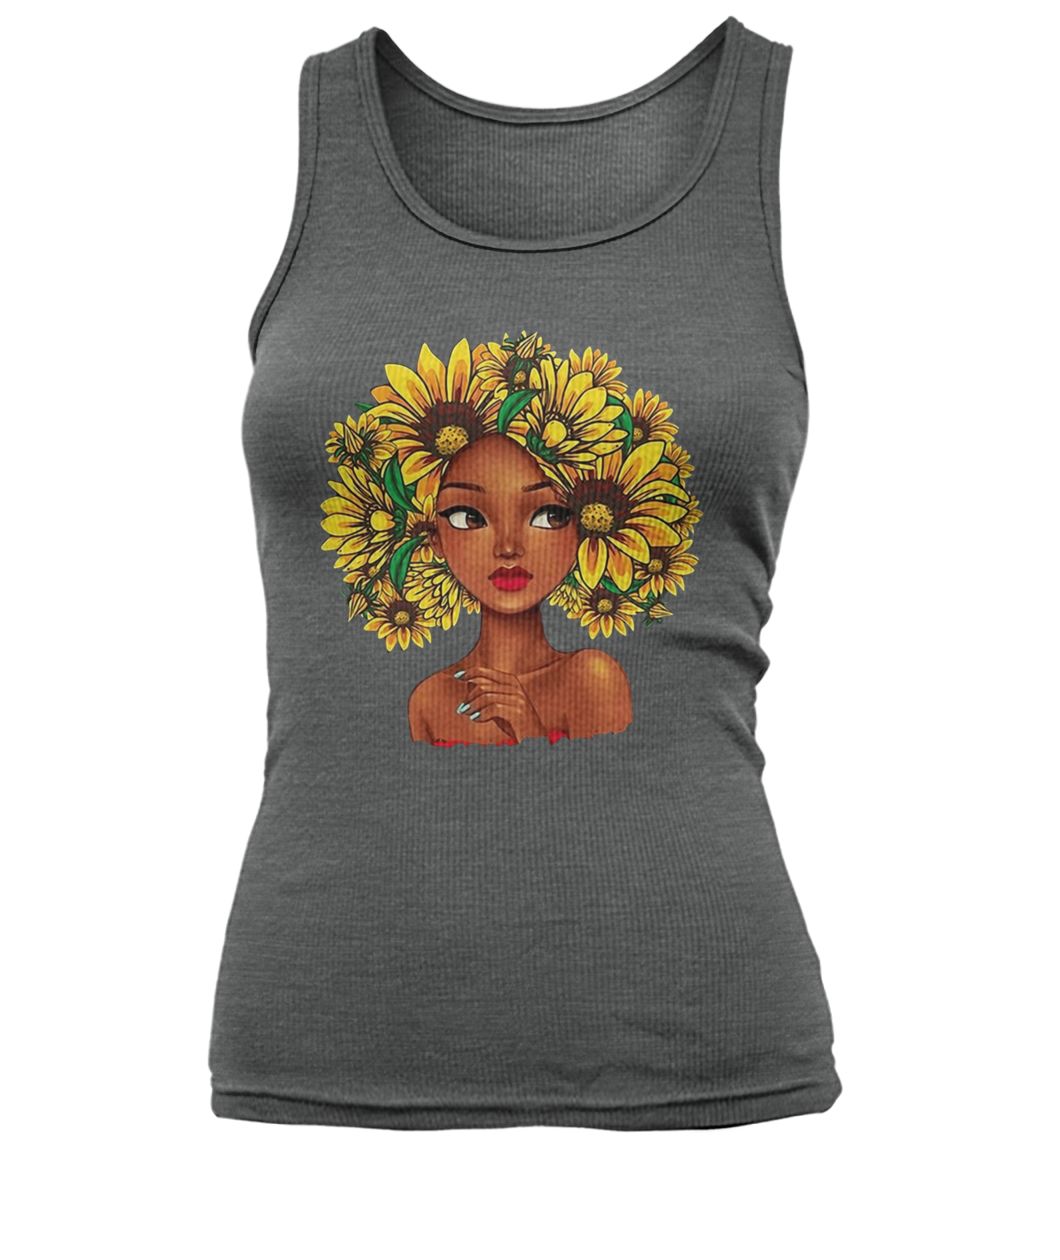 Sunflower natural hair for black girl women's tank top